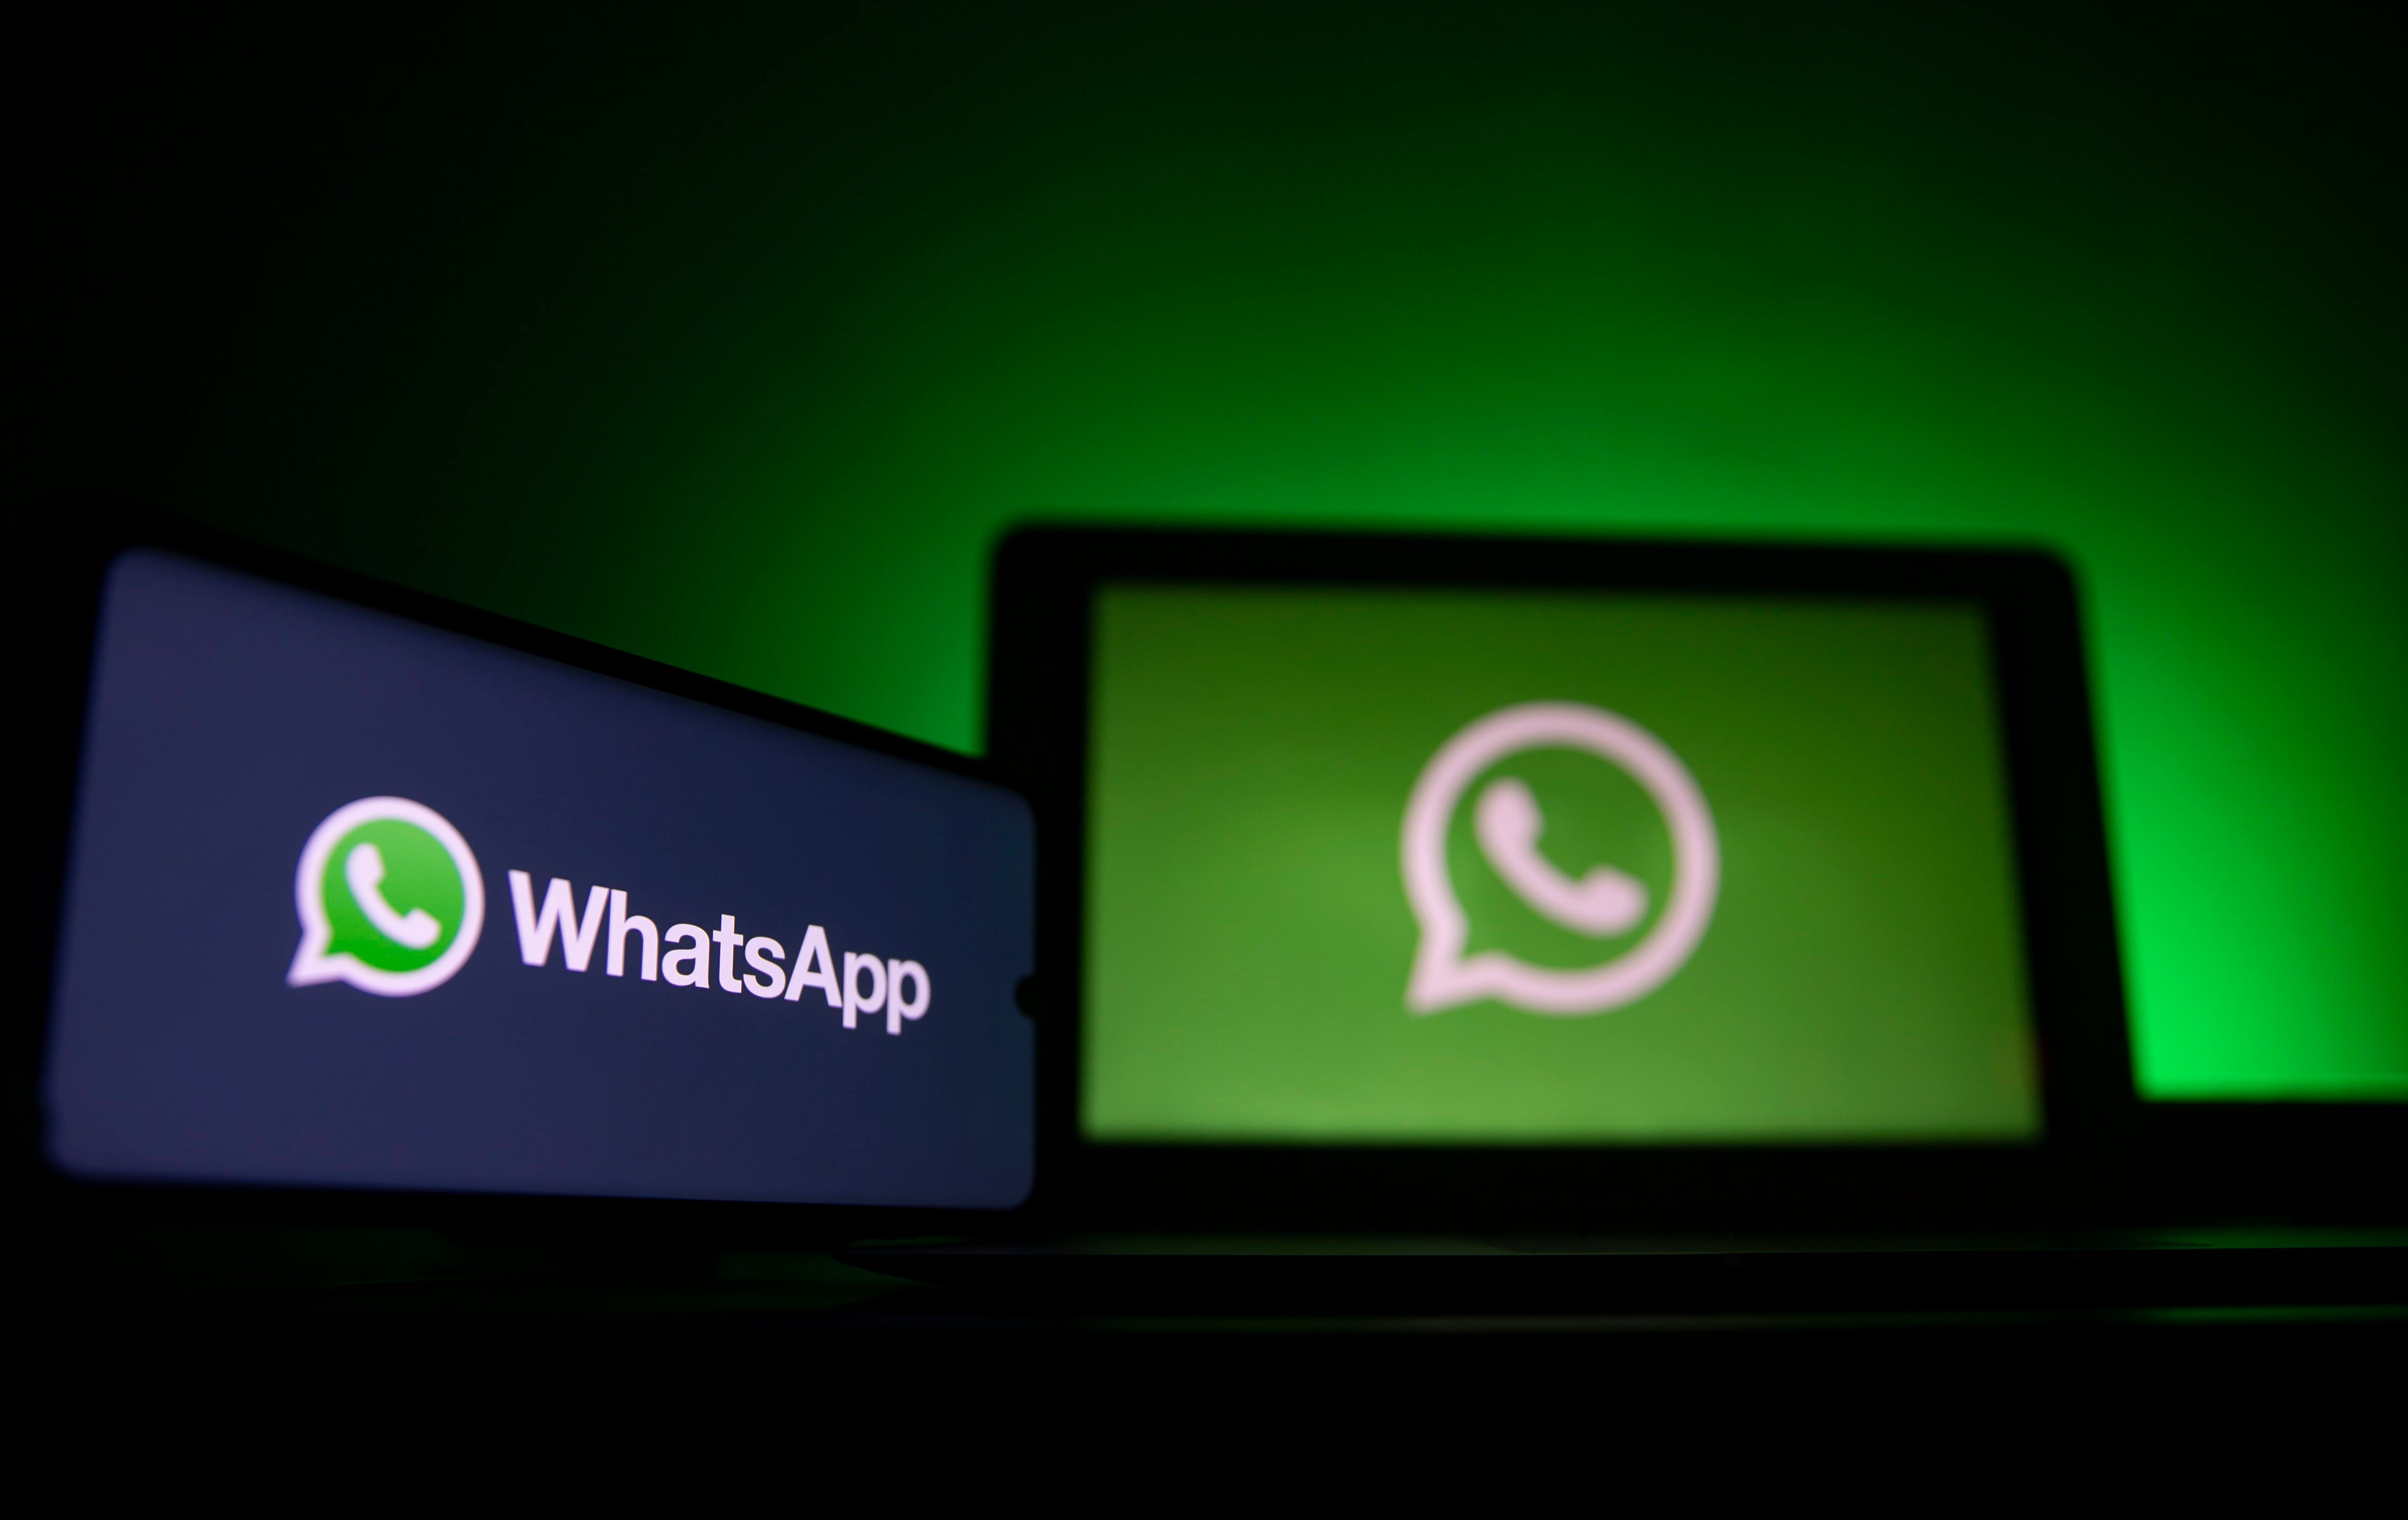 WhatsApp se mantiene en constante actualización por lo que hay que estar atentos a las versiones actuales. (Foto: EFE)